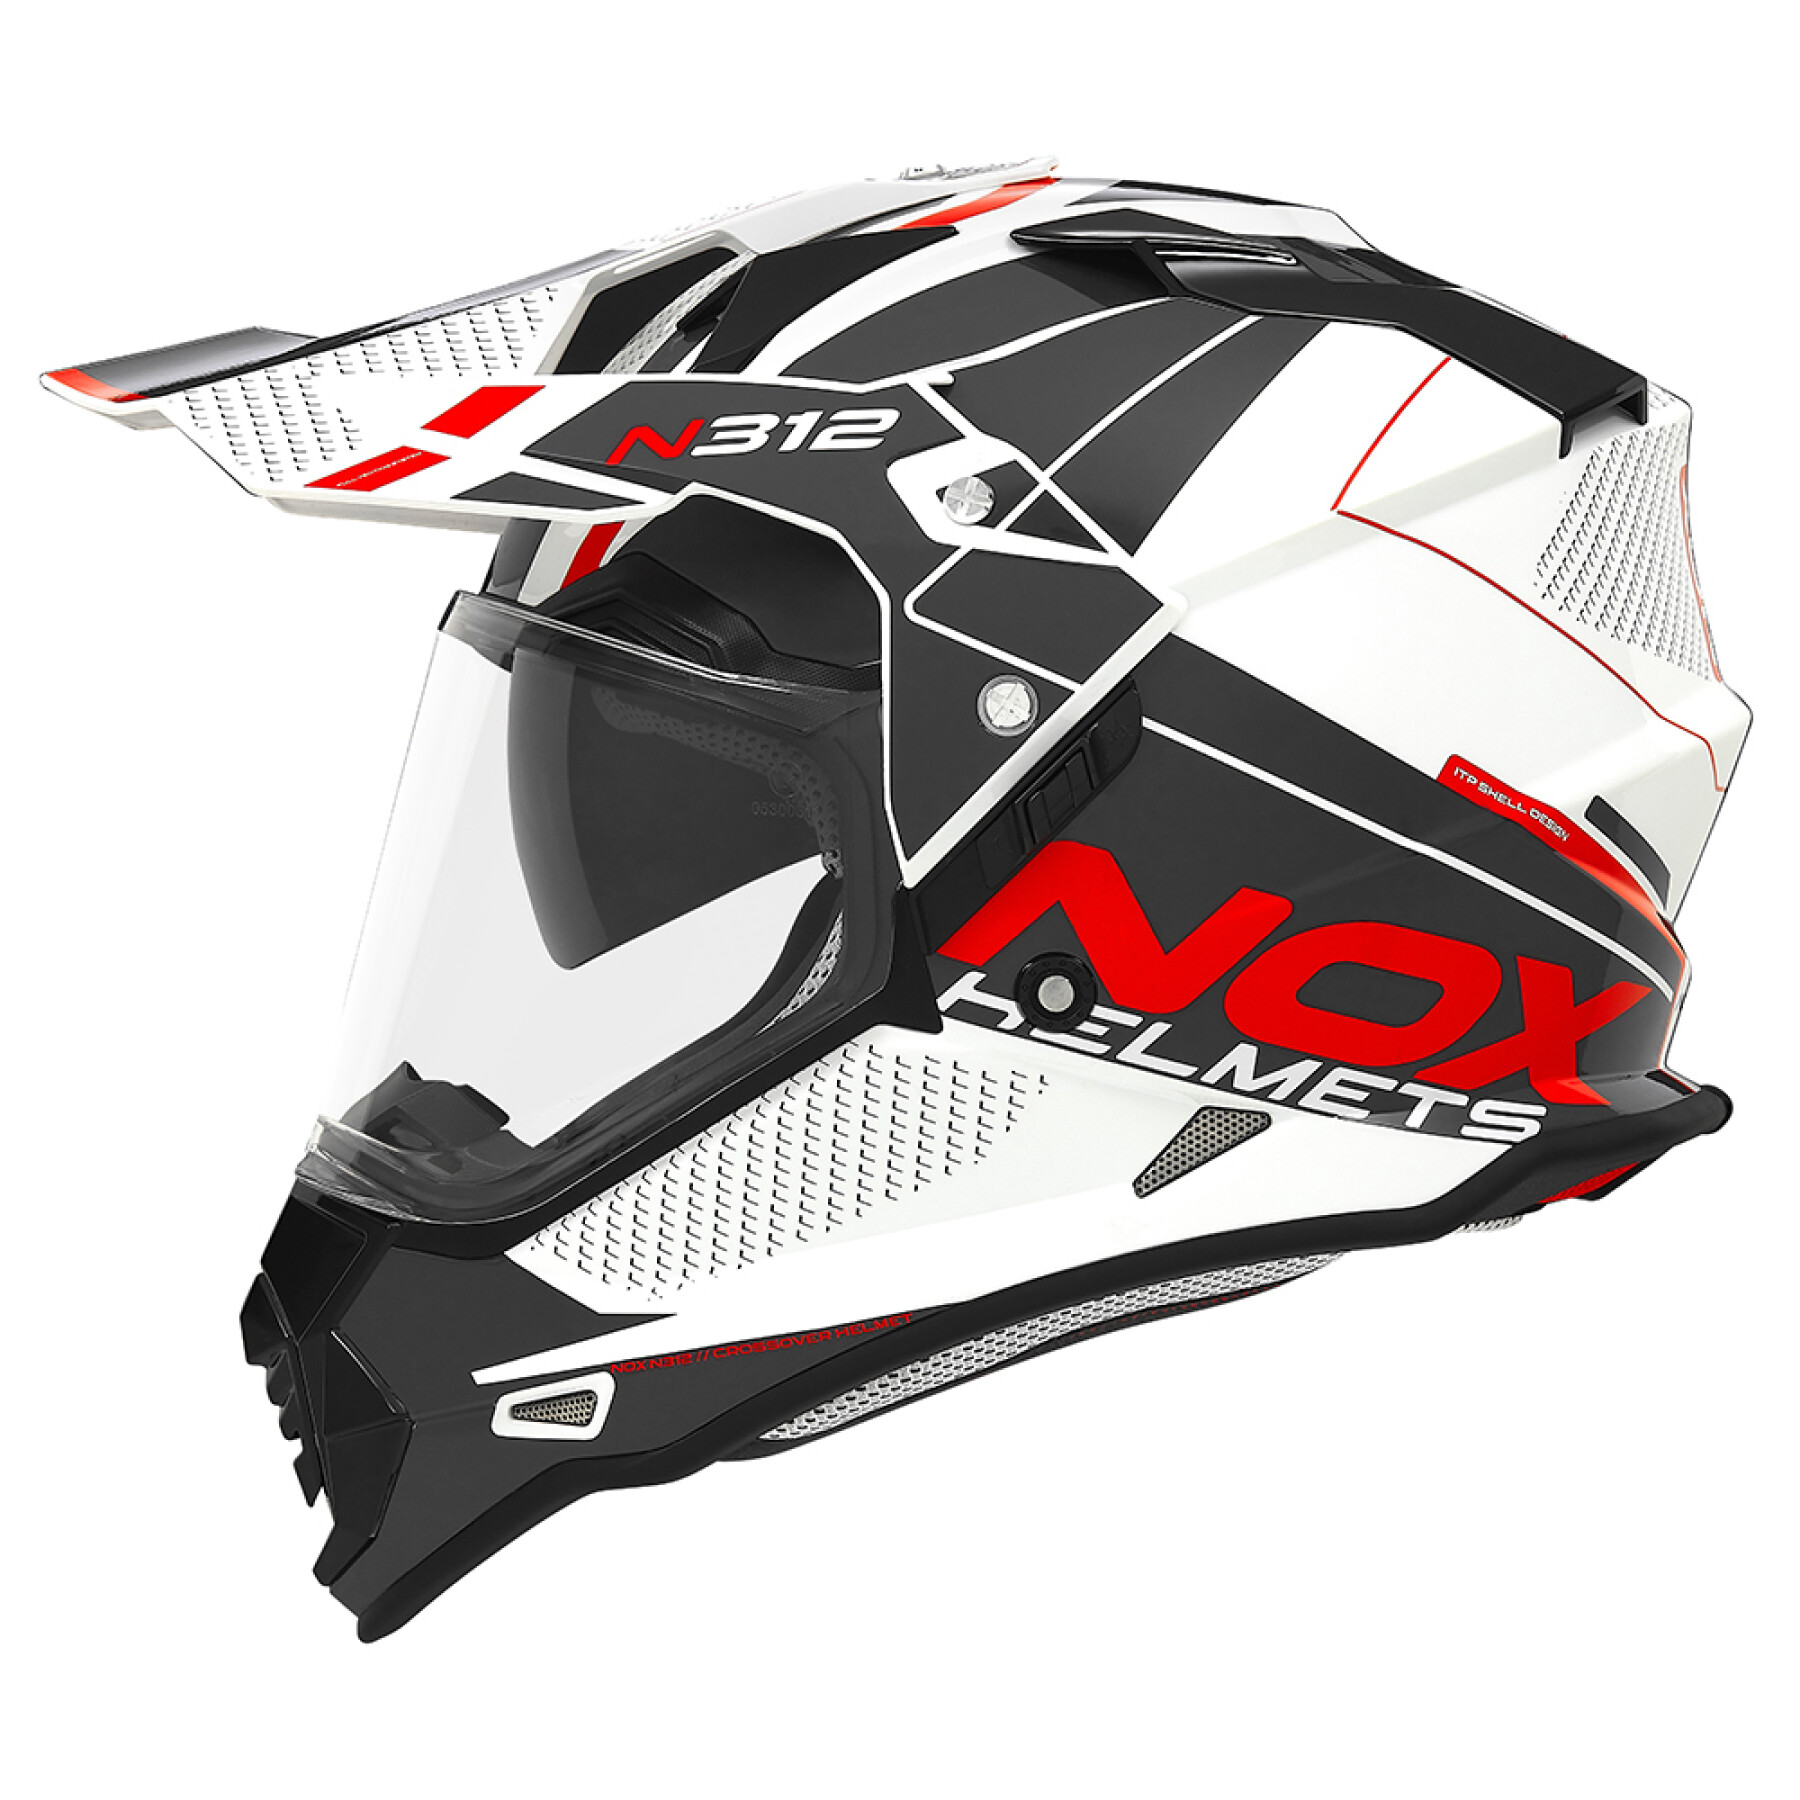 Motorcycle helmet Nox N312 Drone